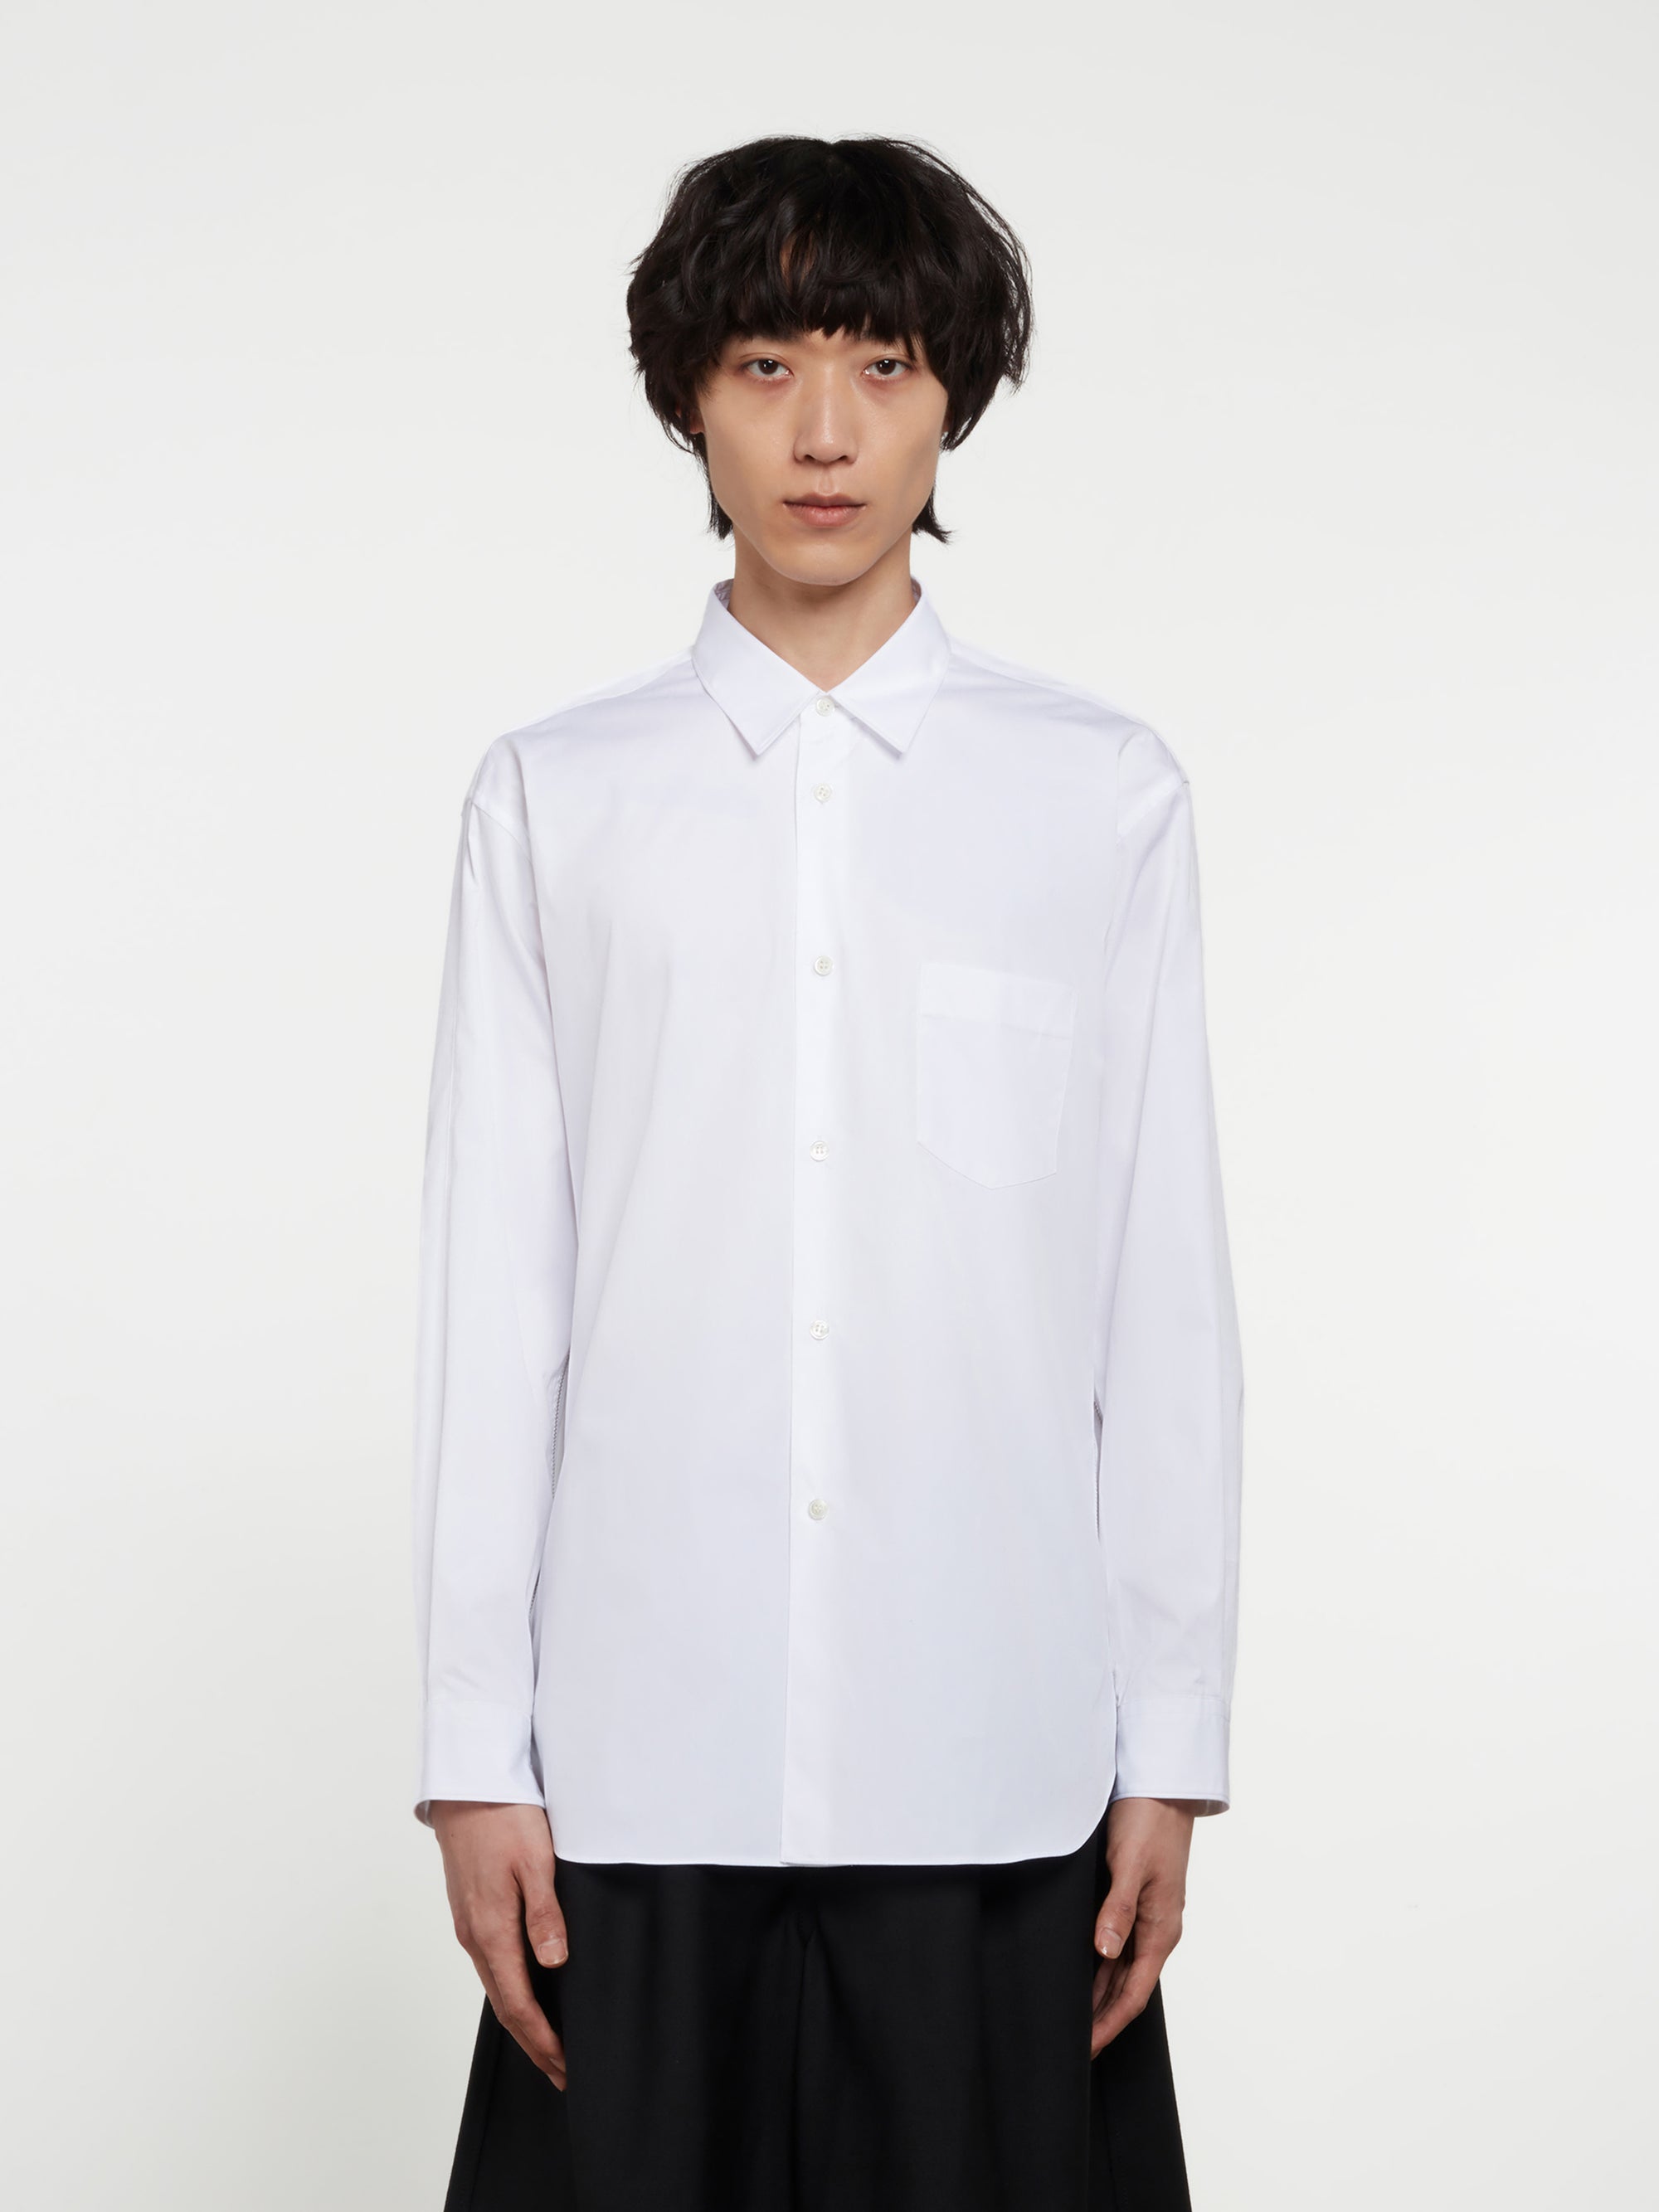 CDG Shirt - Men's Zipped Cotton Shirt - (White) view 1